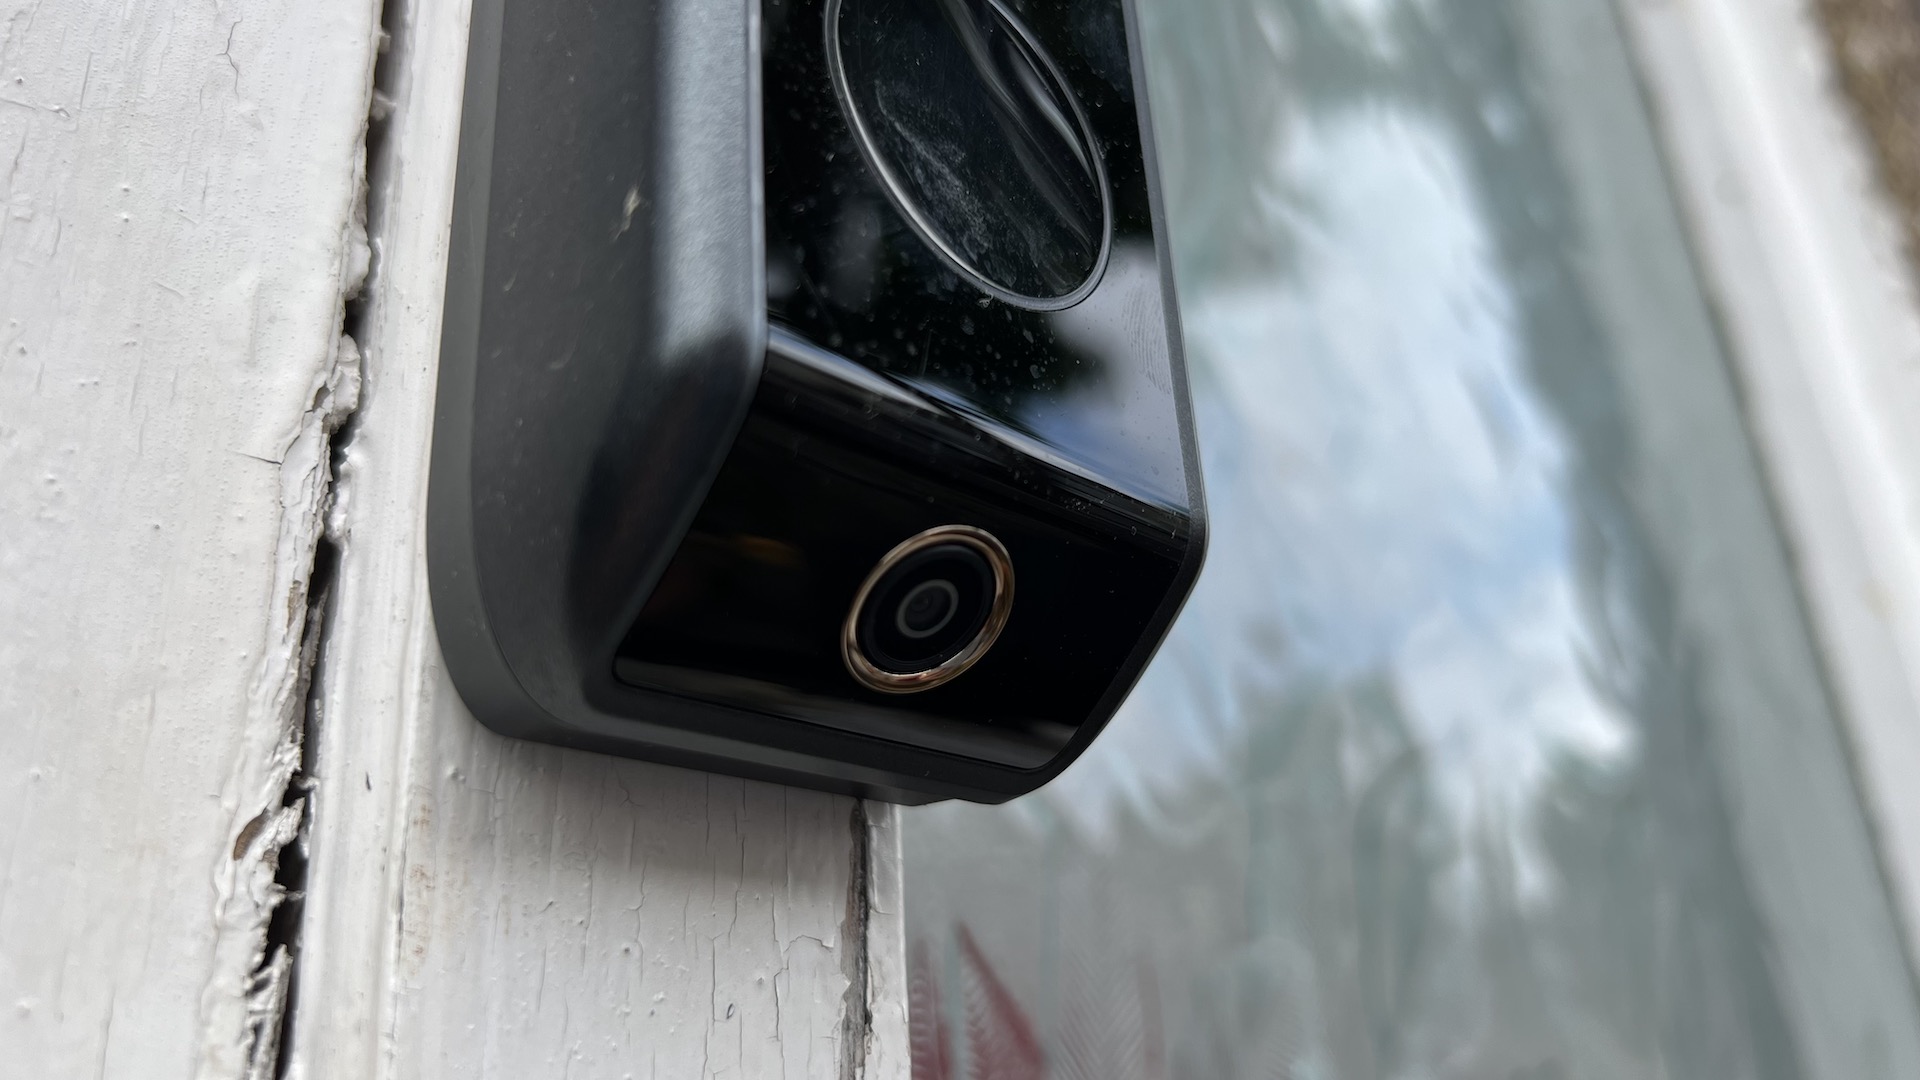 Eufy Video Doorbell Dual